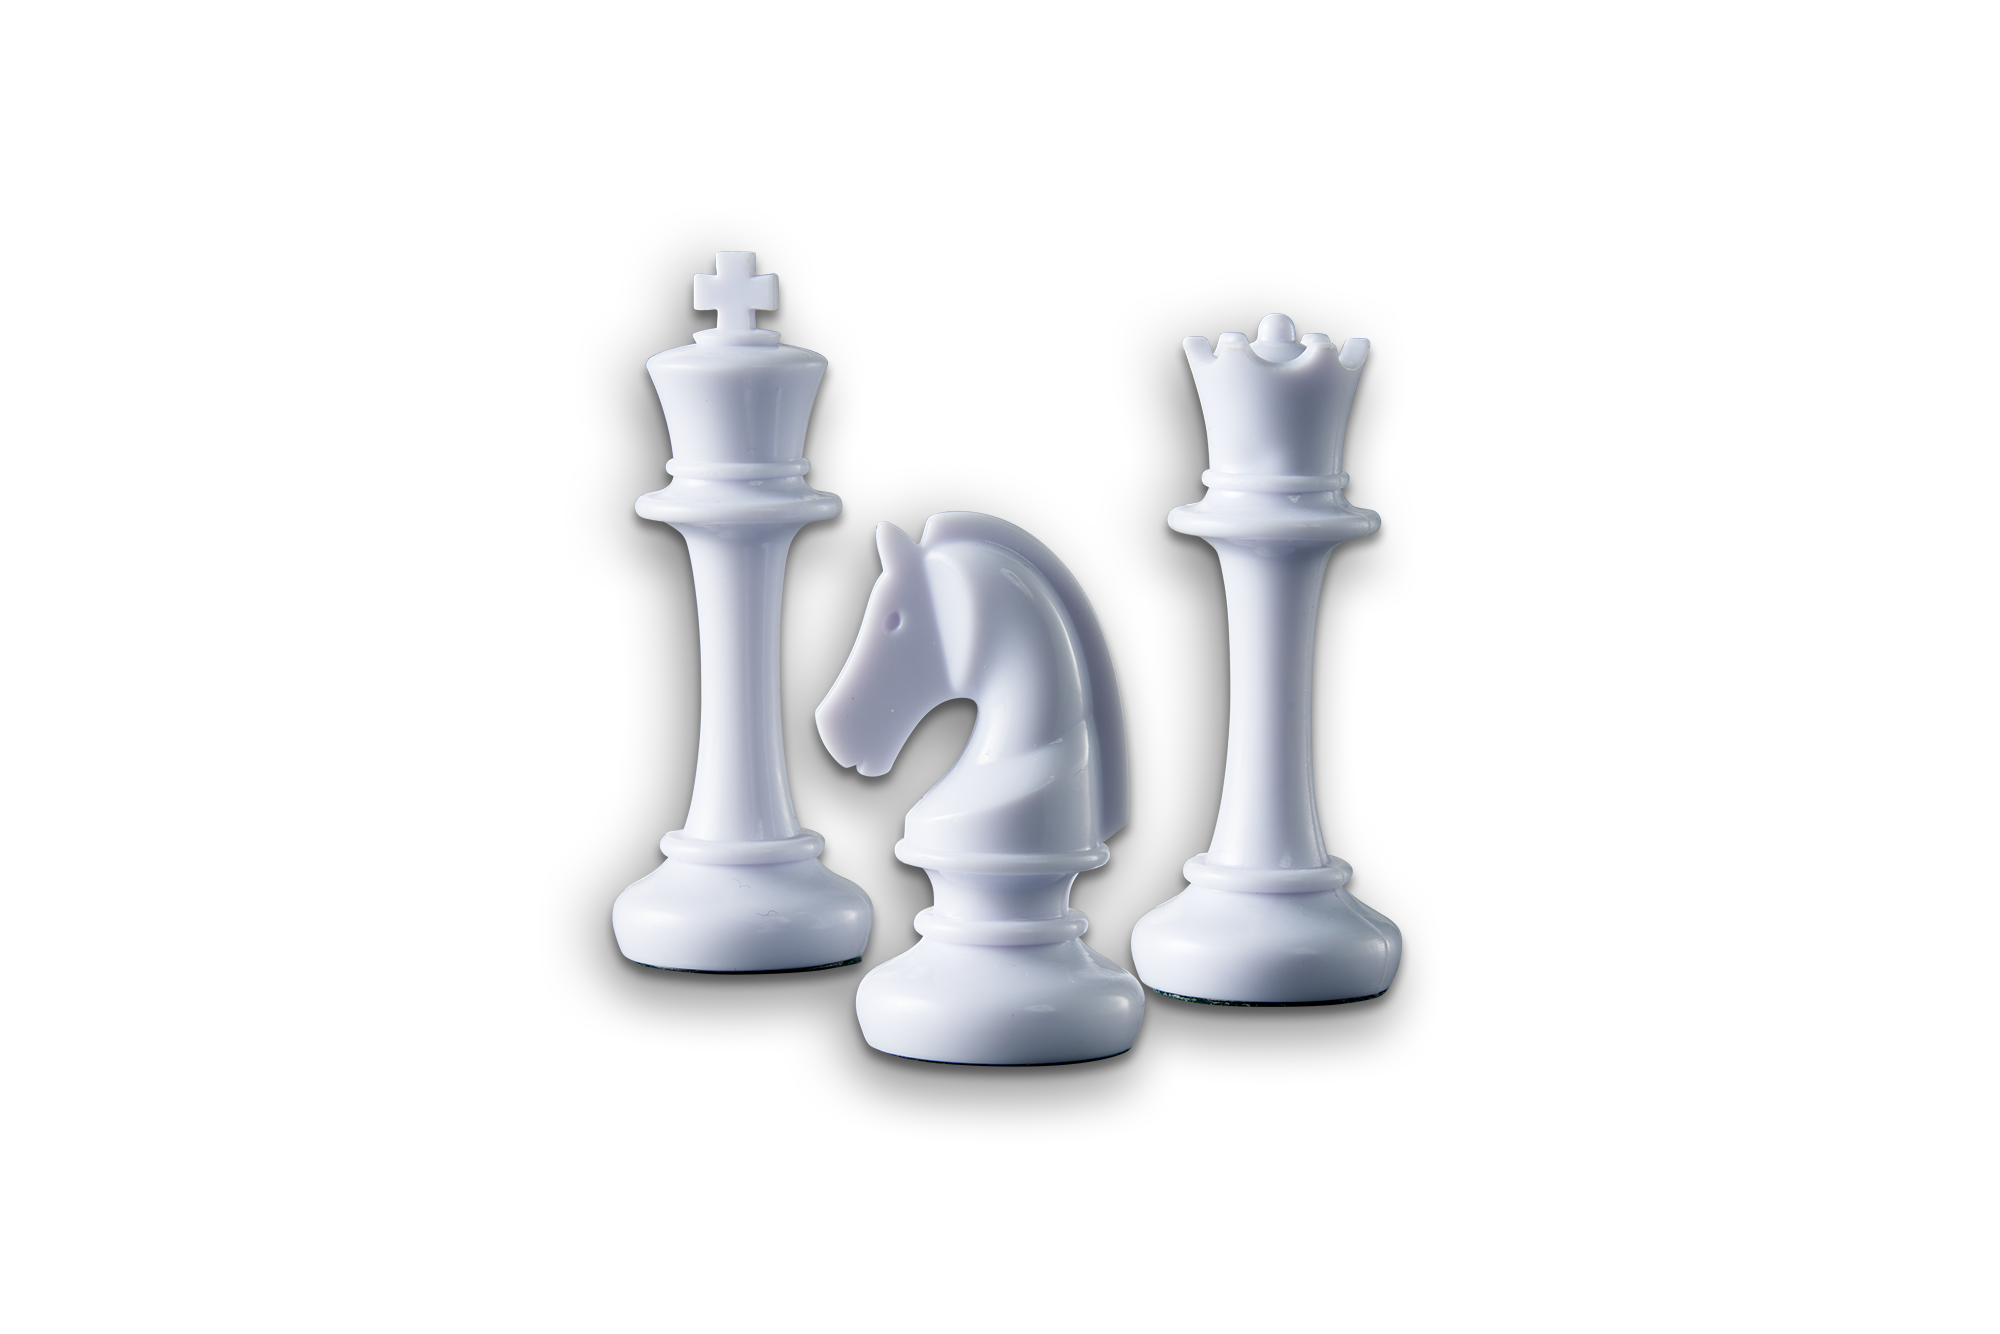 Schach, Spiel, Anleitung und Bewertung auf Alle Brettspiele bei spielen.de